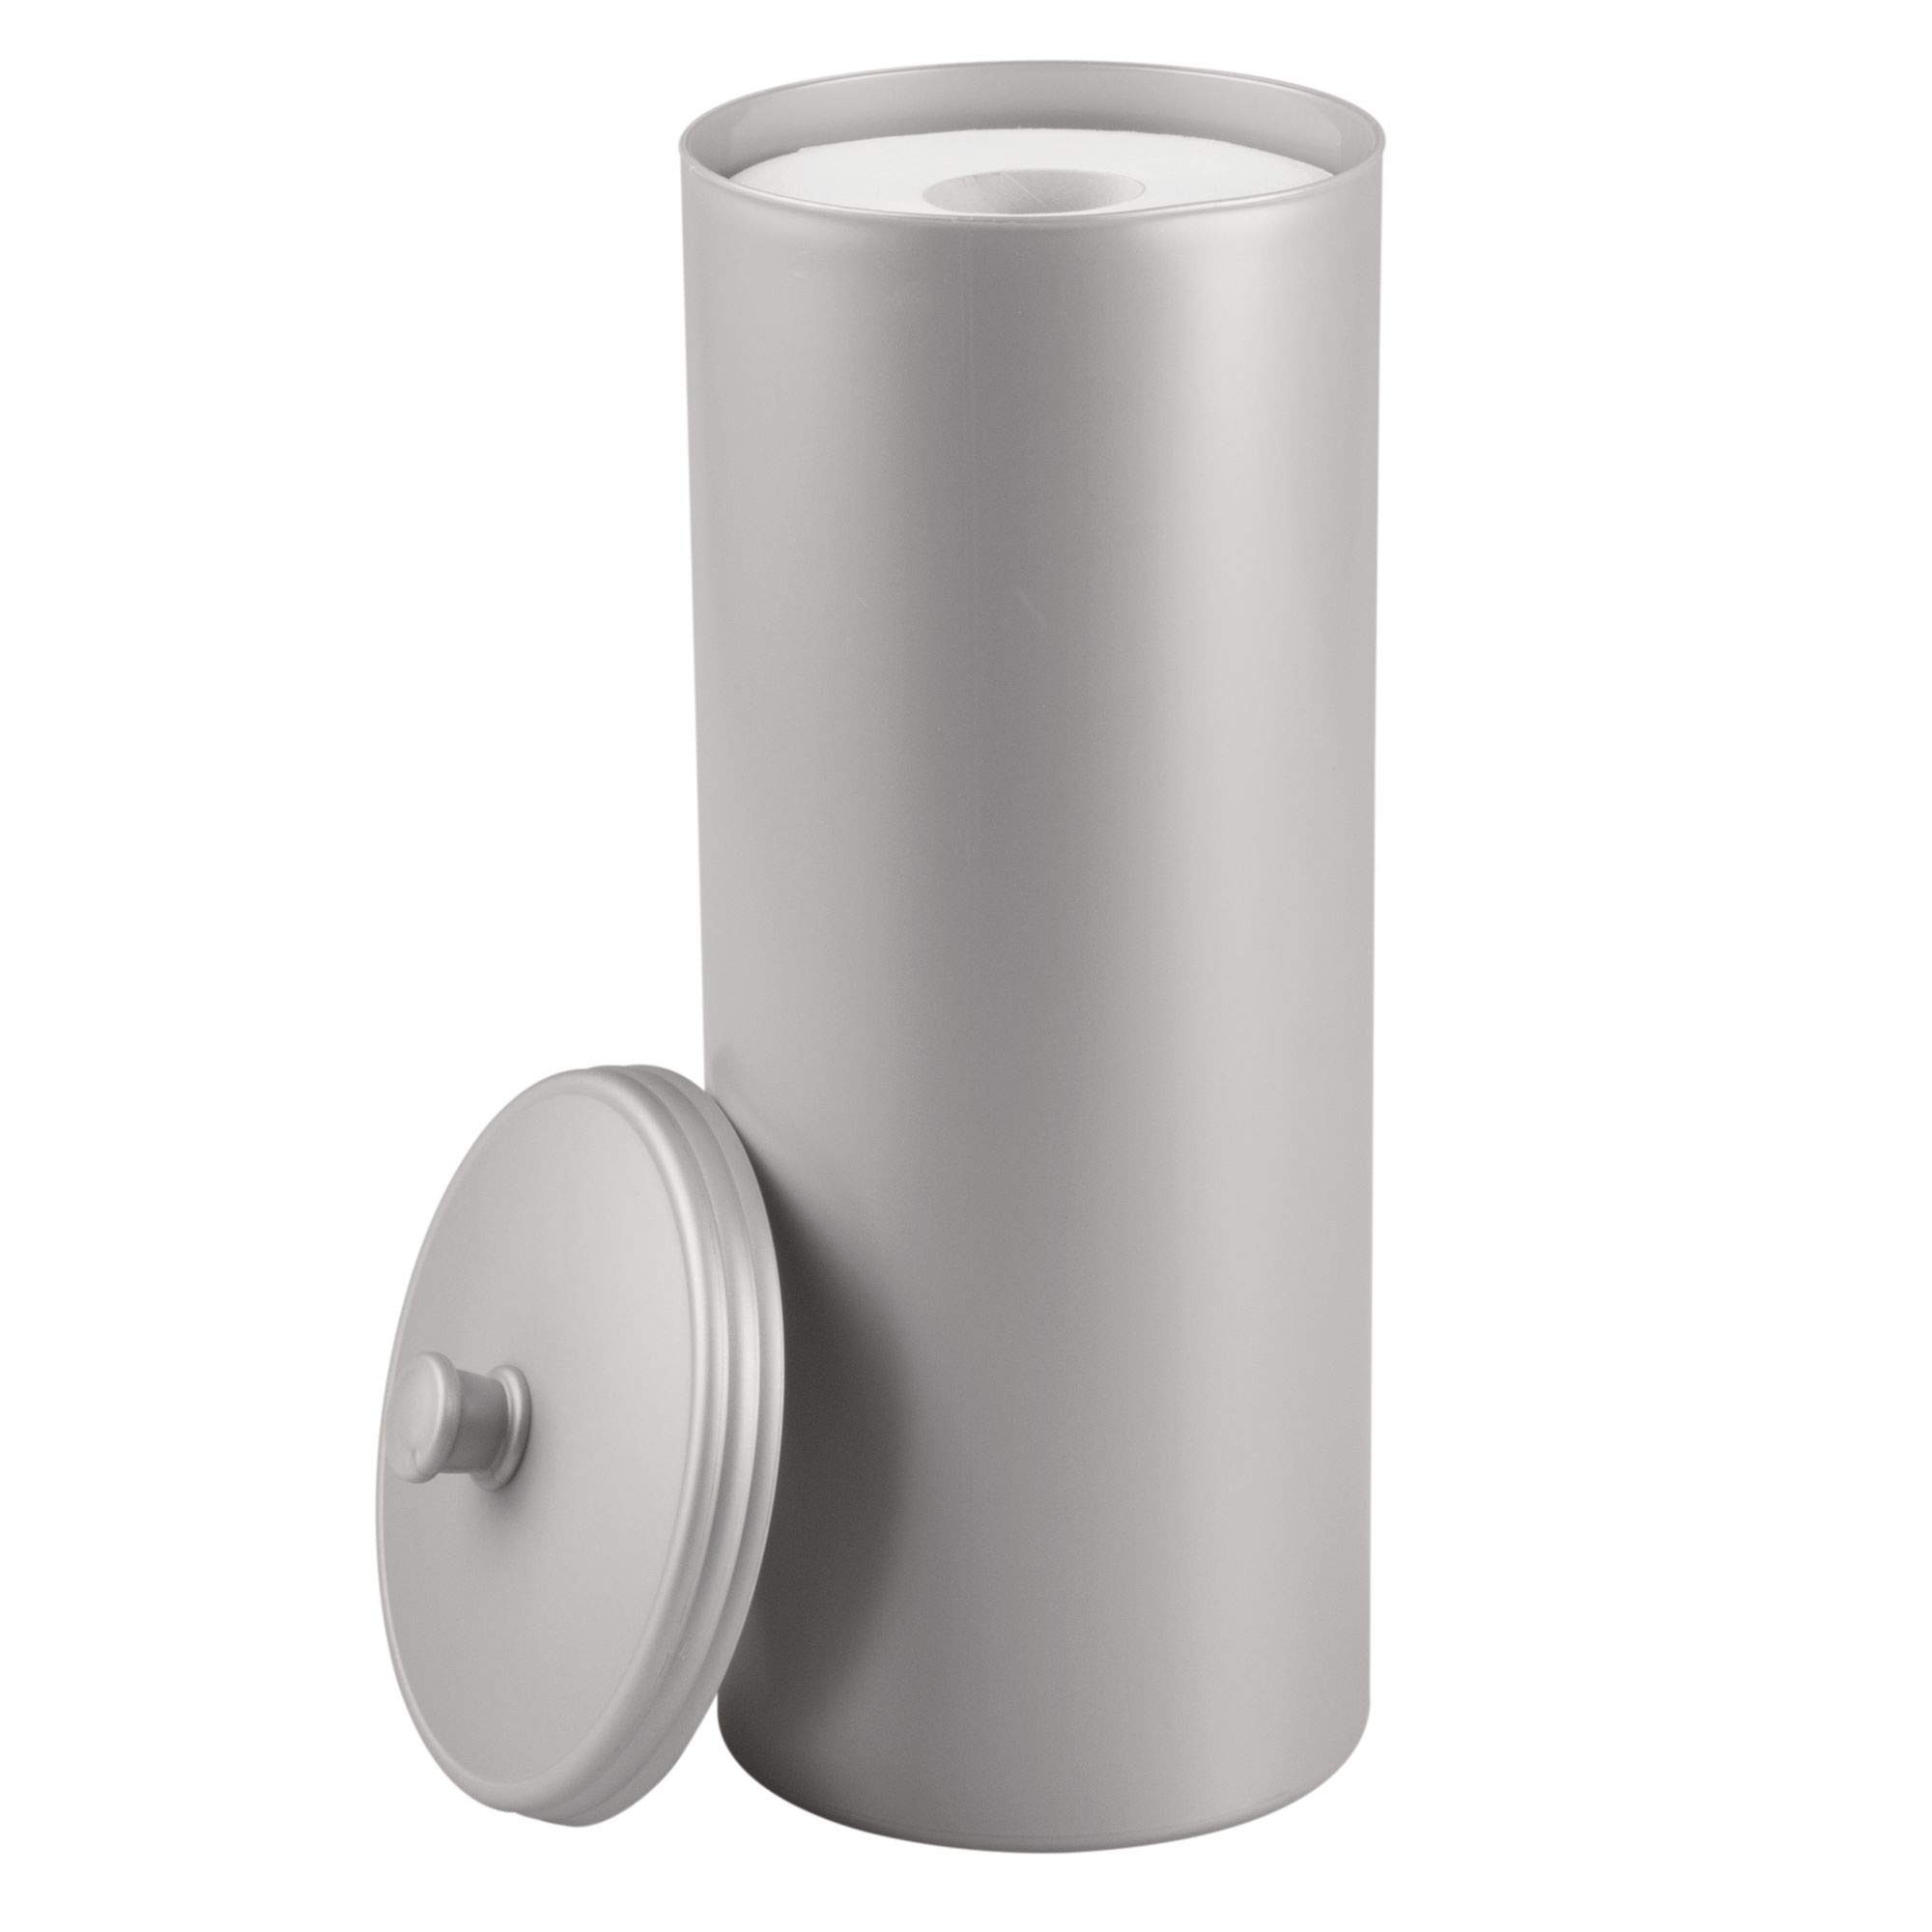 mDesign großer Toilettenpapierhalter mit Deckel – stehende Toilettenpapierhalterung aus Kunststoff (Durchmesser: 16 cm) – Klopapierhalter auch für große Rollen – grau